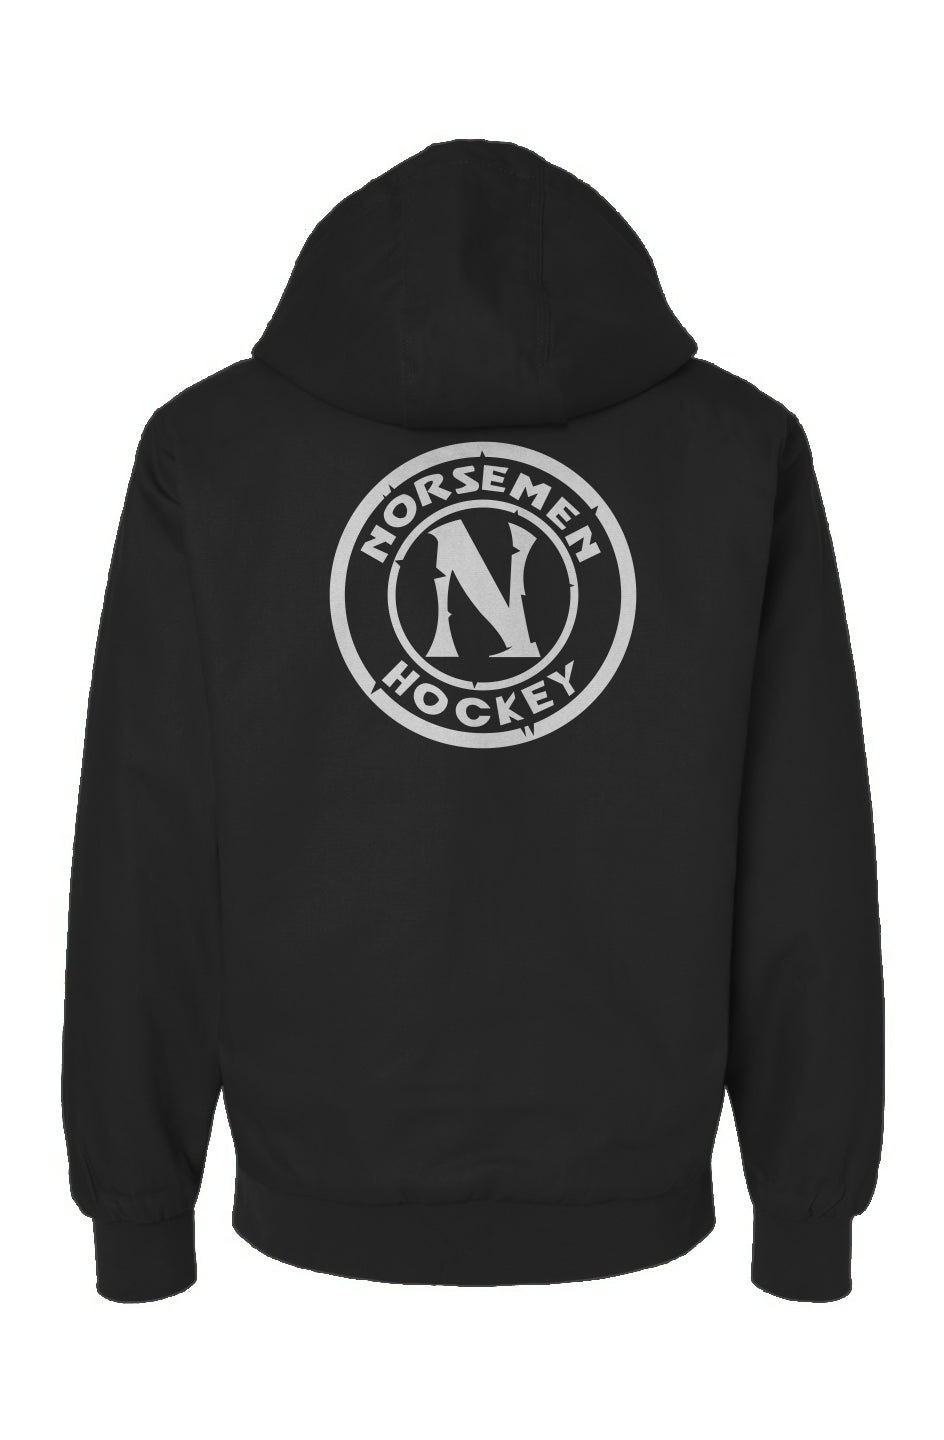 Canvas Workwear Jacket Black | Norsemen Ice Hockey Logo Atl White